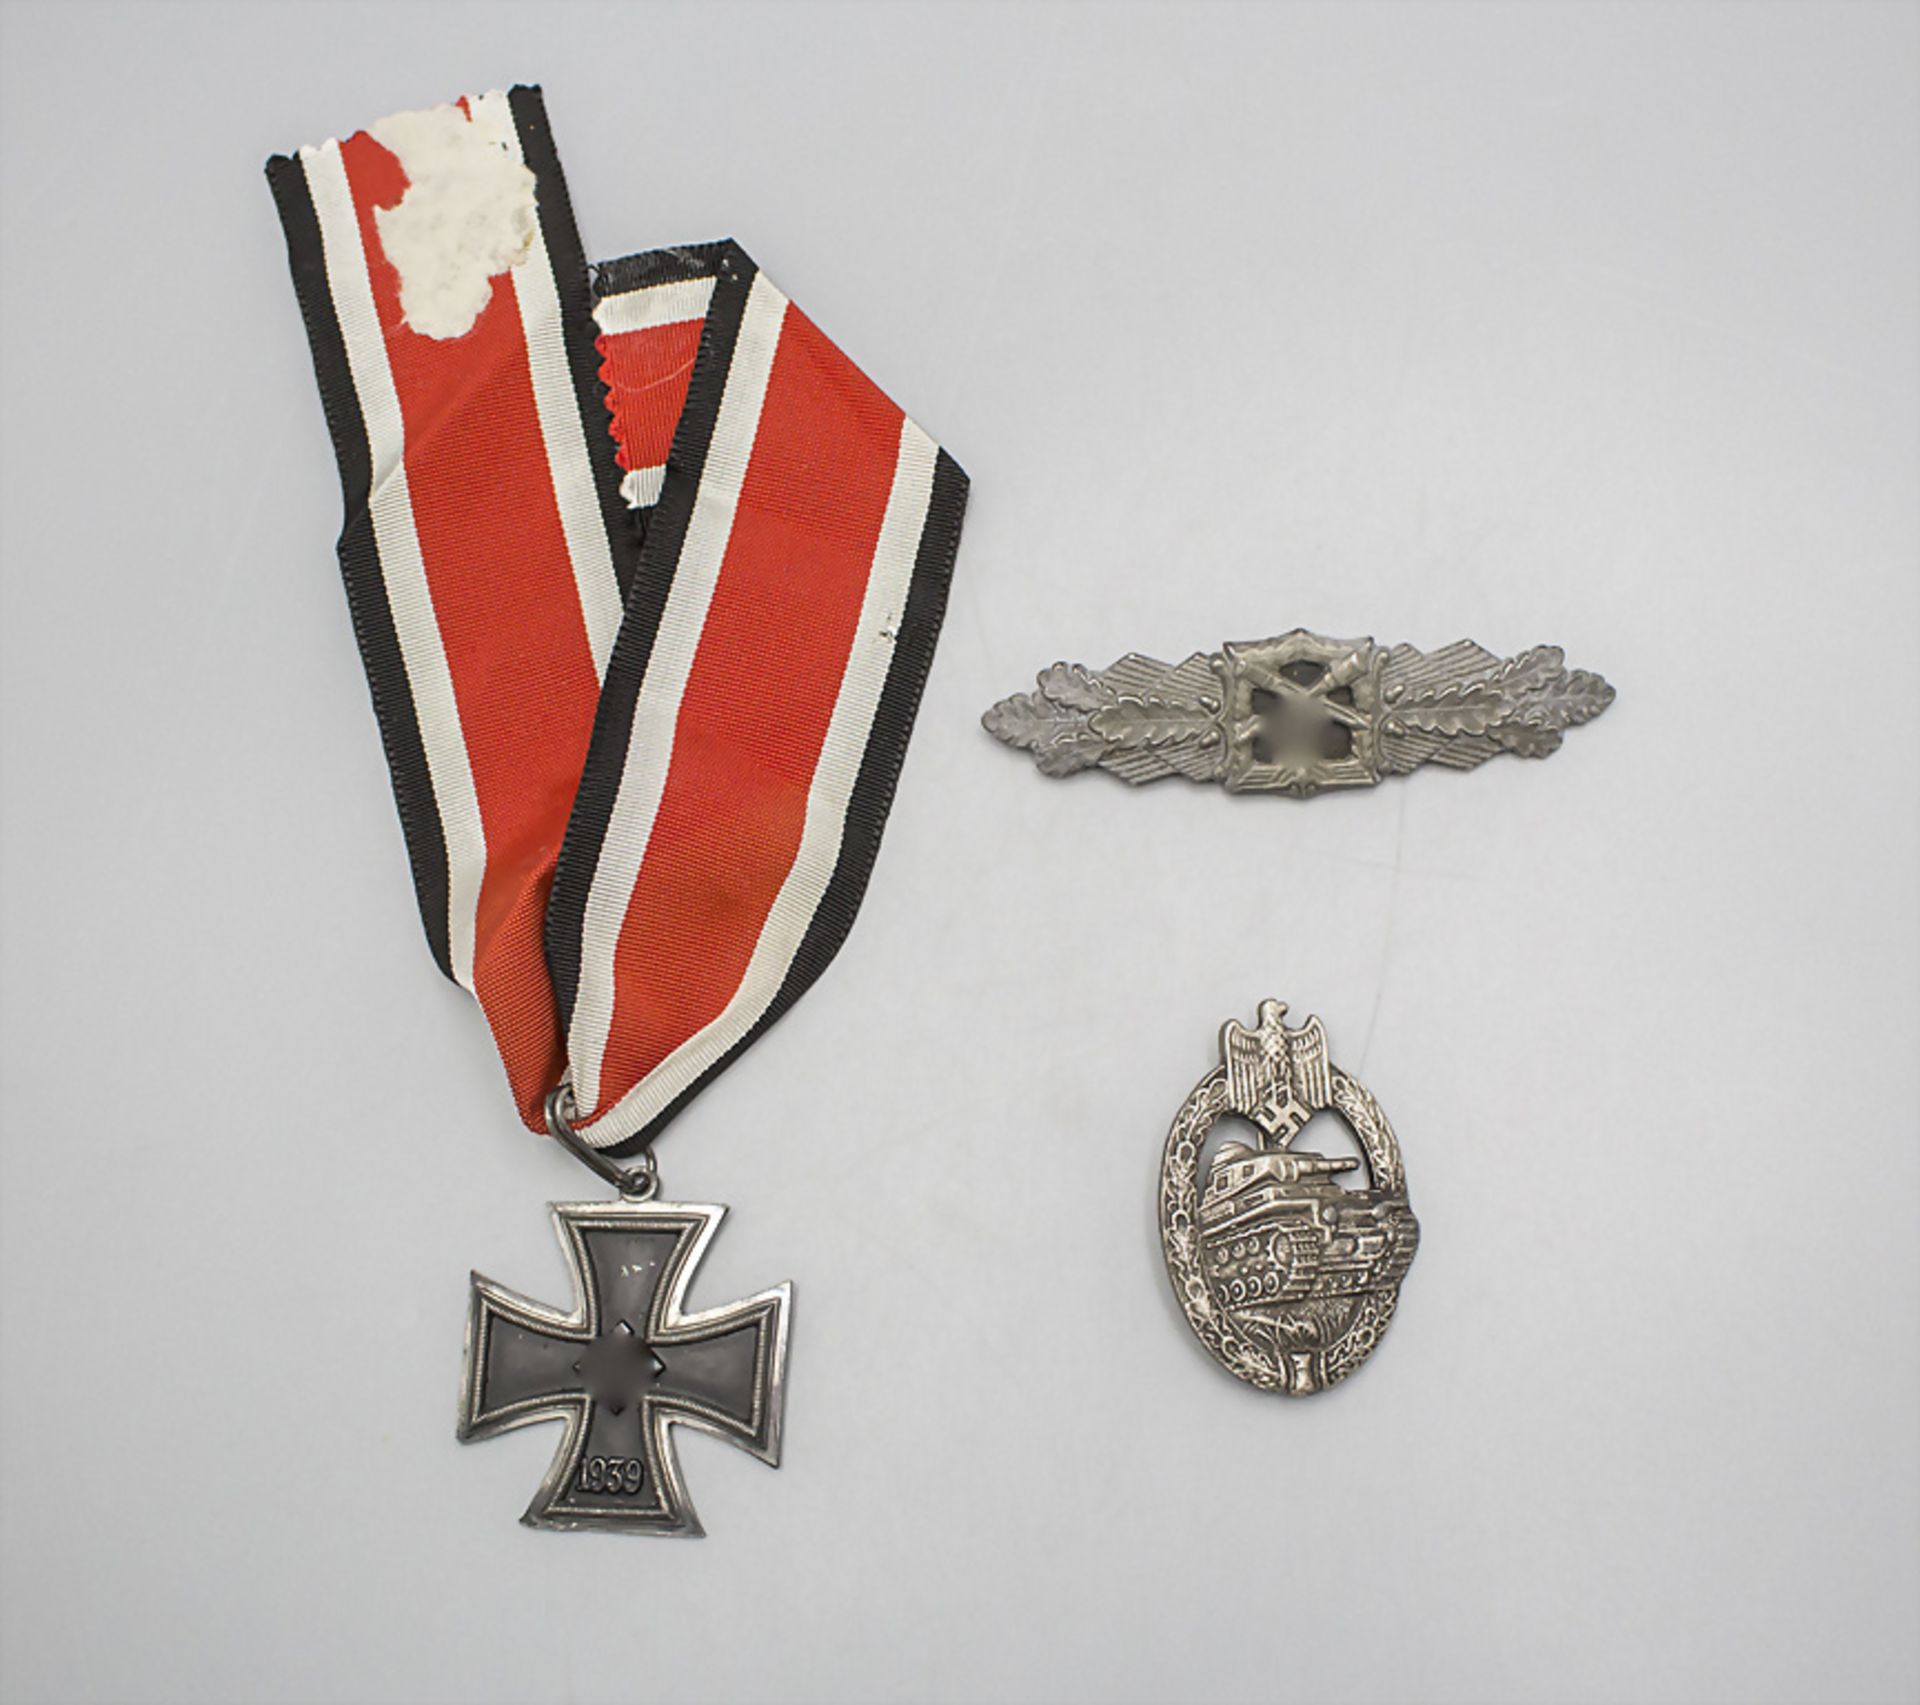 Sammleranfertigungen Orden und Ehrenzeichen / A collection of copies of medals and ...